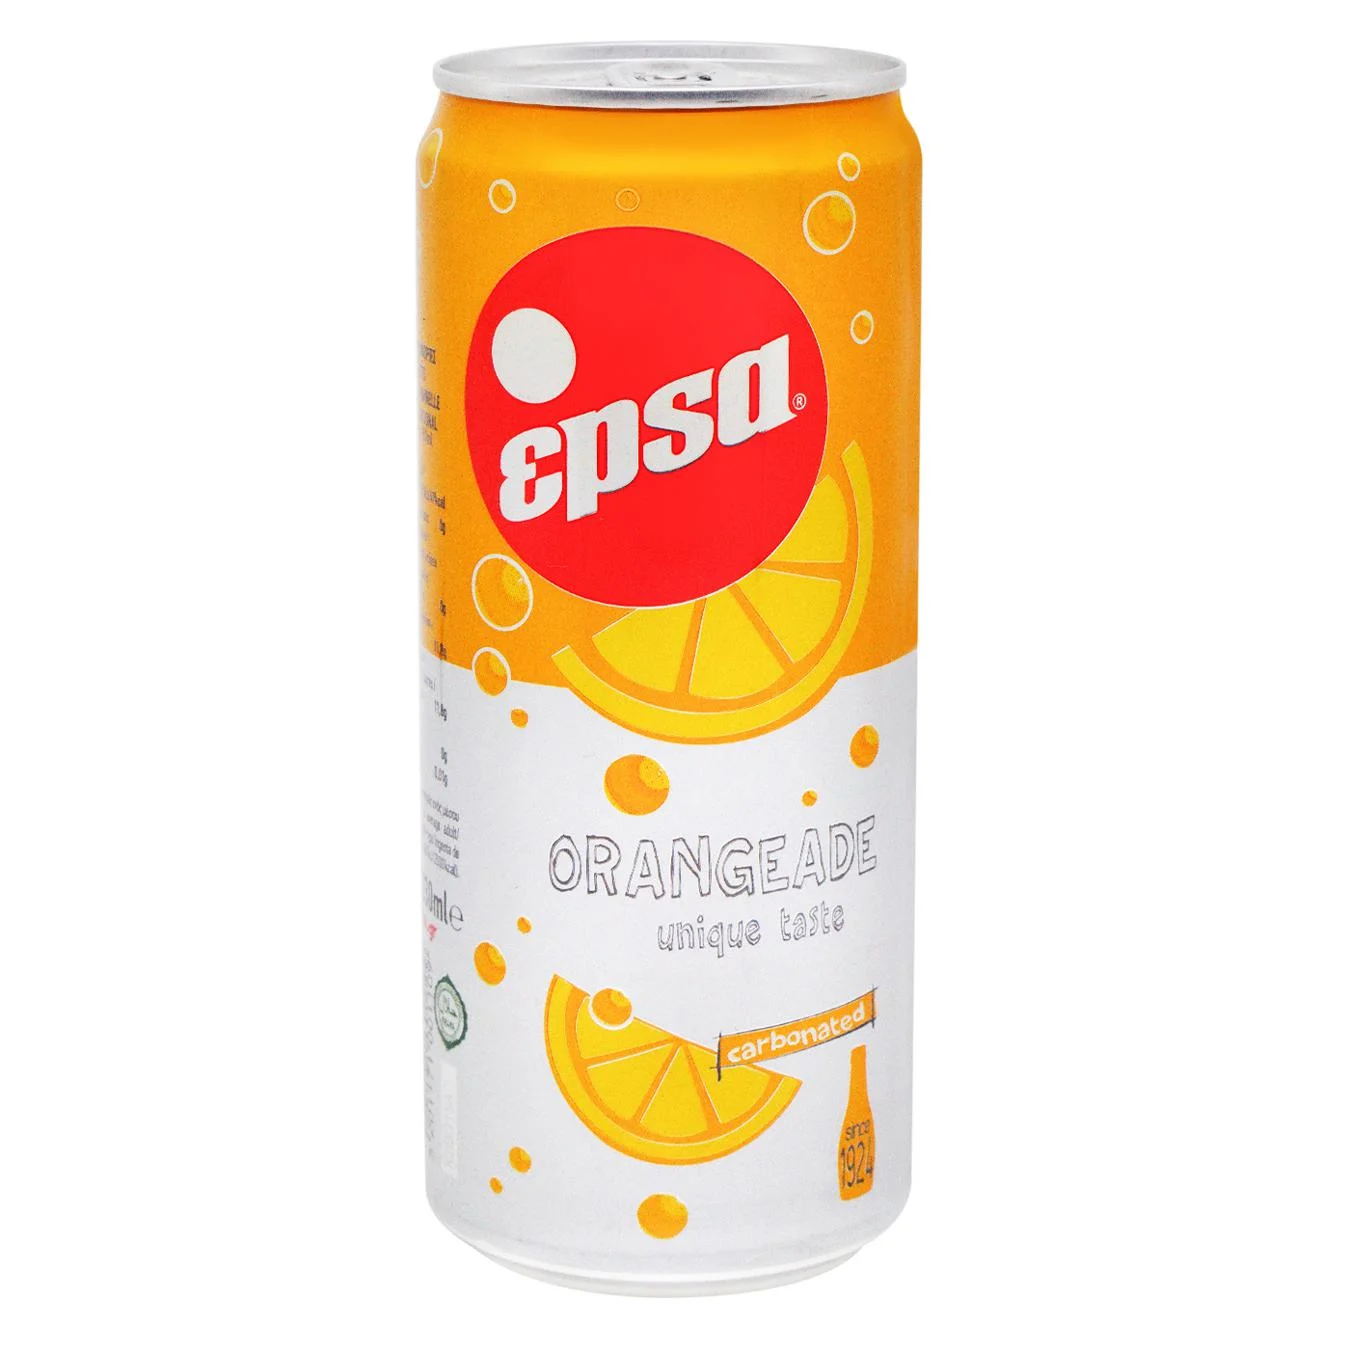 Carbonated drink Epsa Orangeade 0.33 l iron can